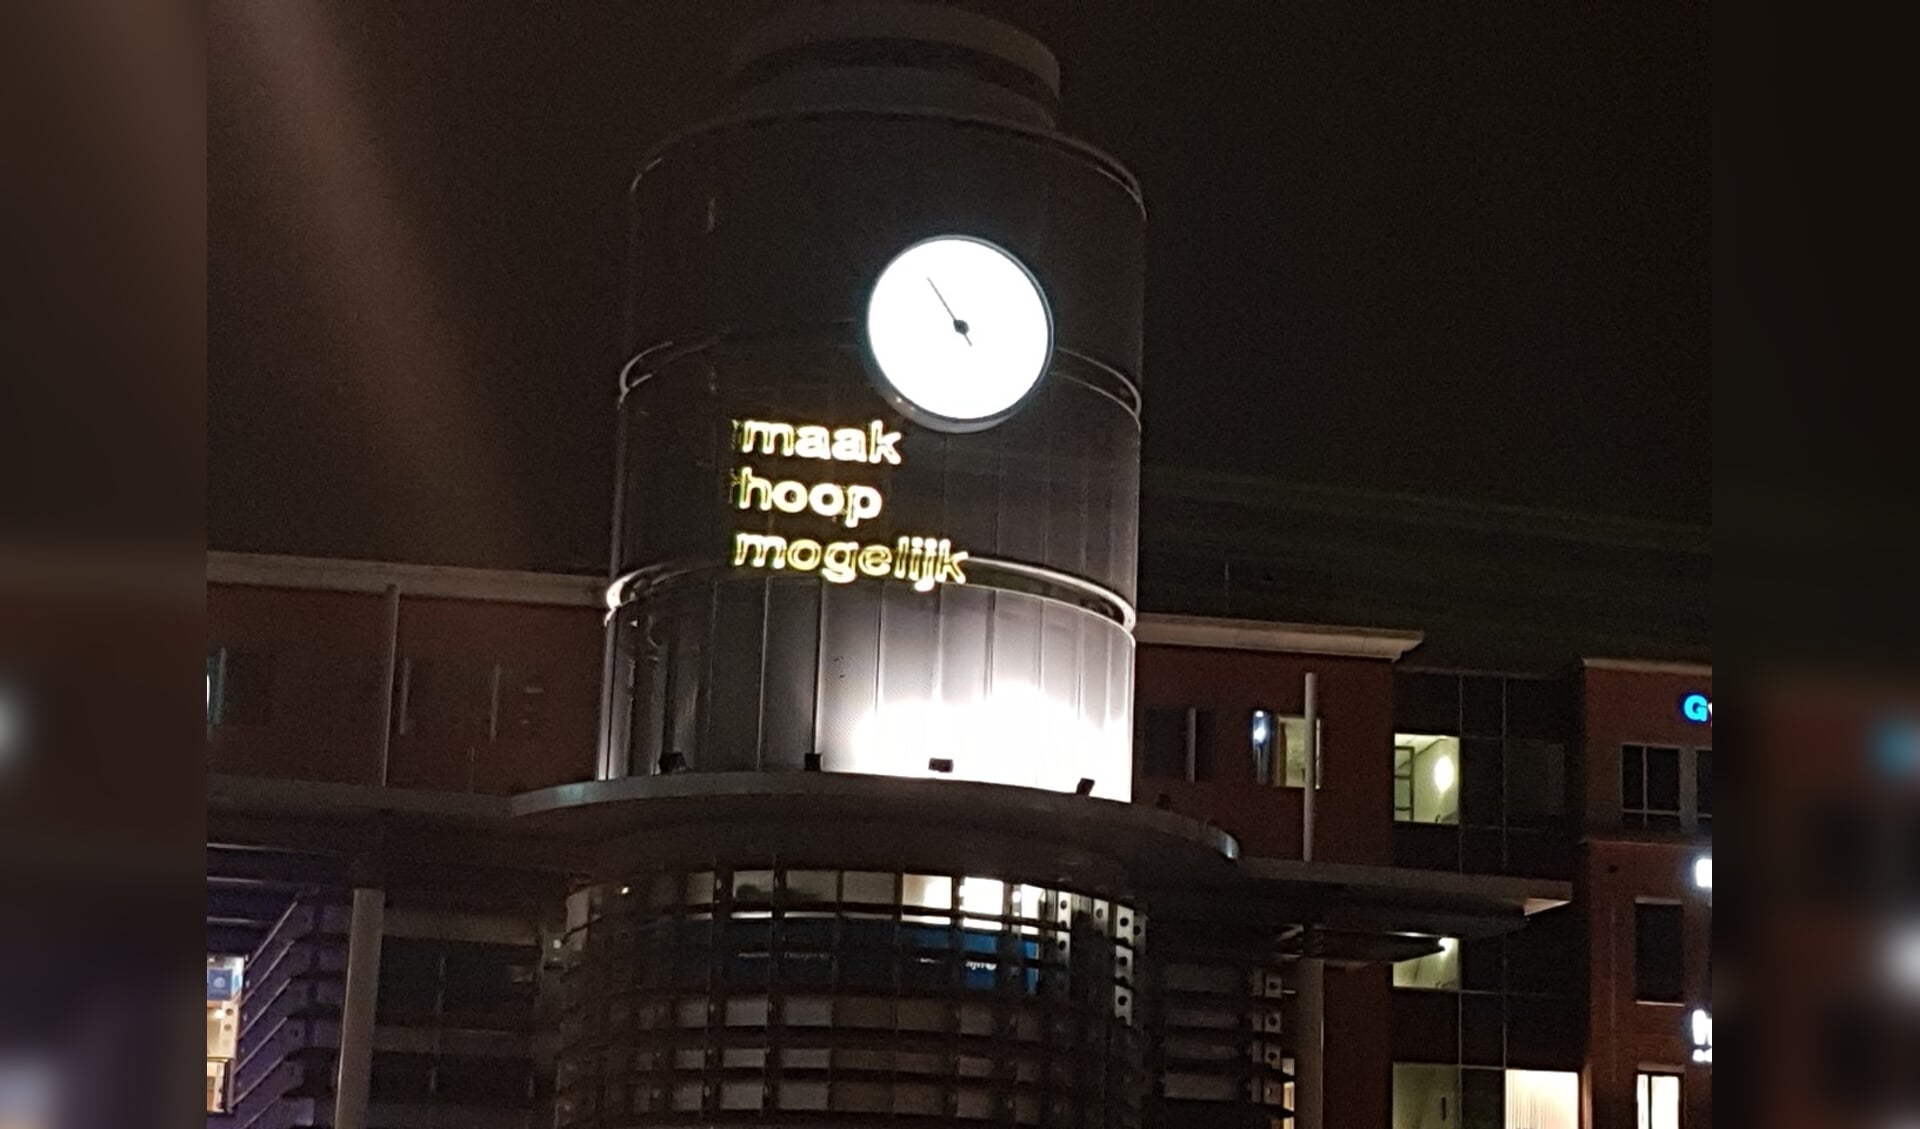 De lichtprojecties met de tekst ‘Maak hoop mogelijk’ waren te zien op het Bastion en het Centraal Station (foto) in Den Bosch.